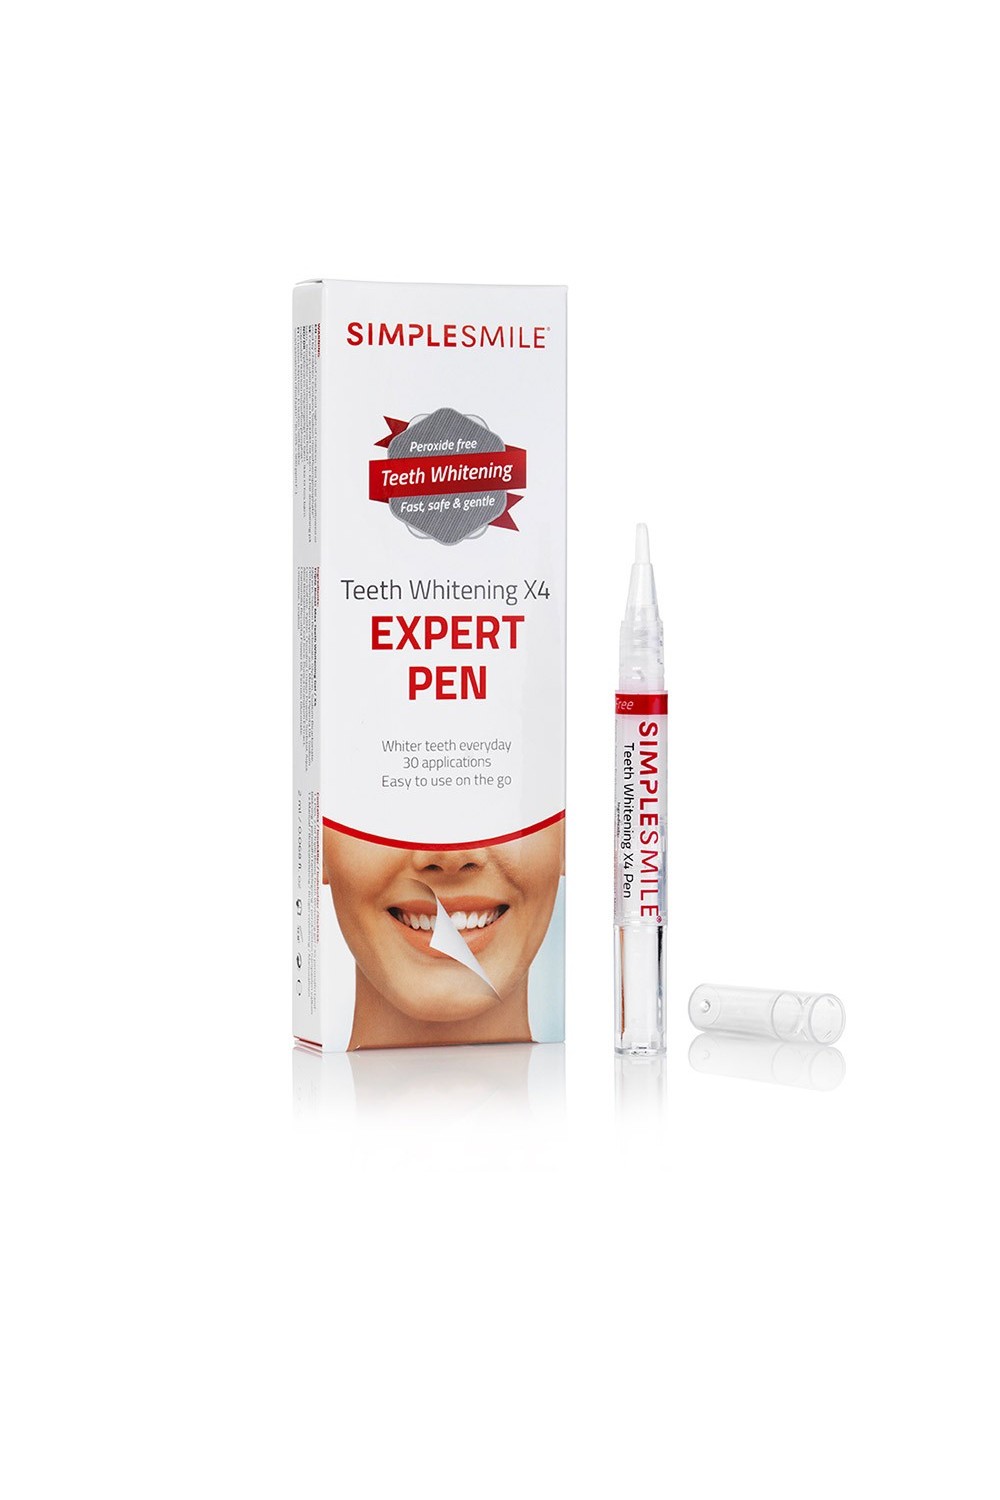 Beconfident Simplesmile Teeth Whitening Expert Pen 2ml